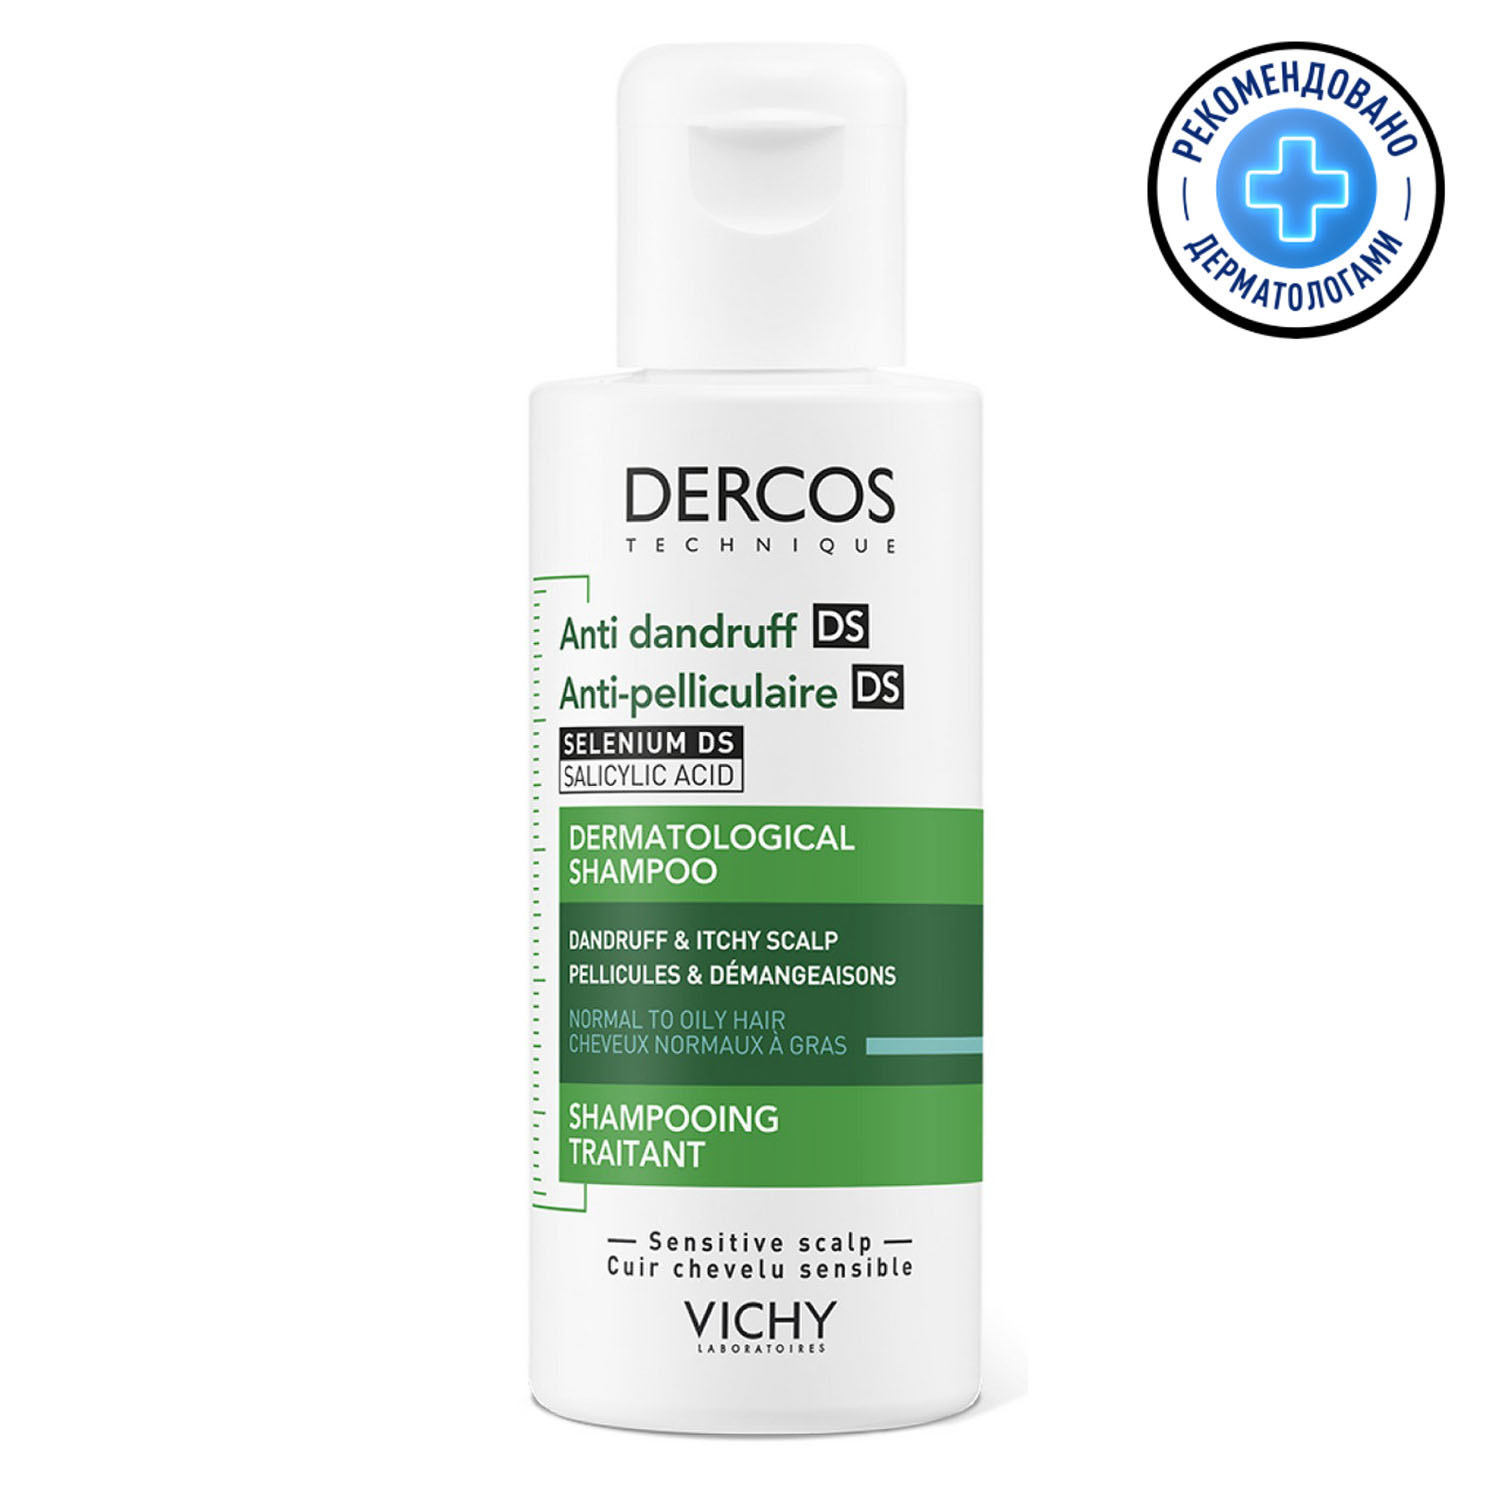 Vichy Интенсивный шампунь-уход против перхоти для нормальной и жирной кожи головы, 75 мл (Vichy, Dercos)